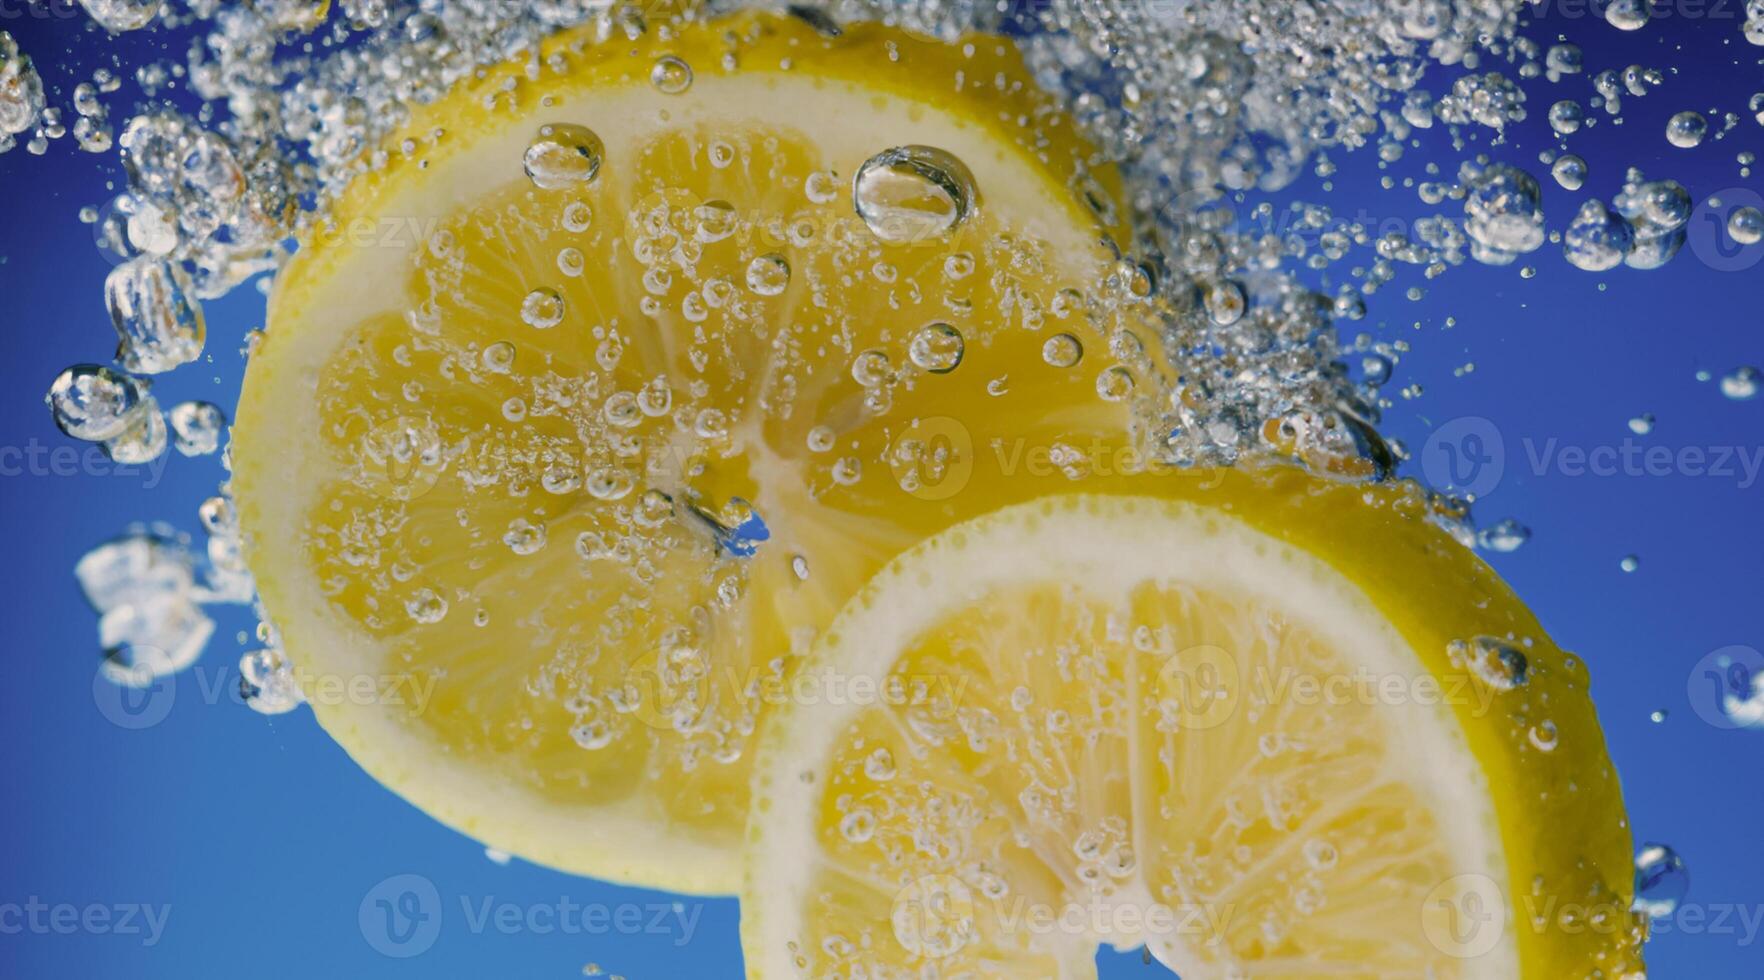 subacqueo Limone fetta nel bibita acqua o limonata con bolle. foto